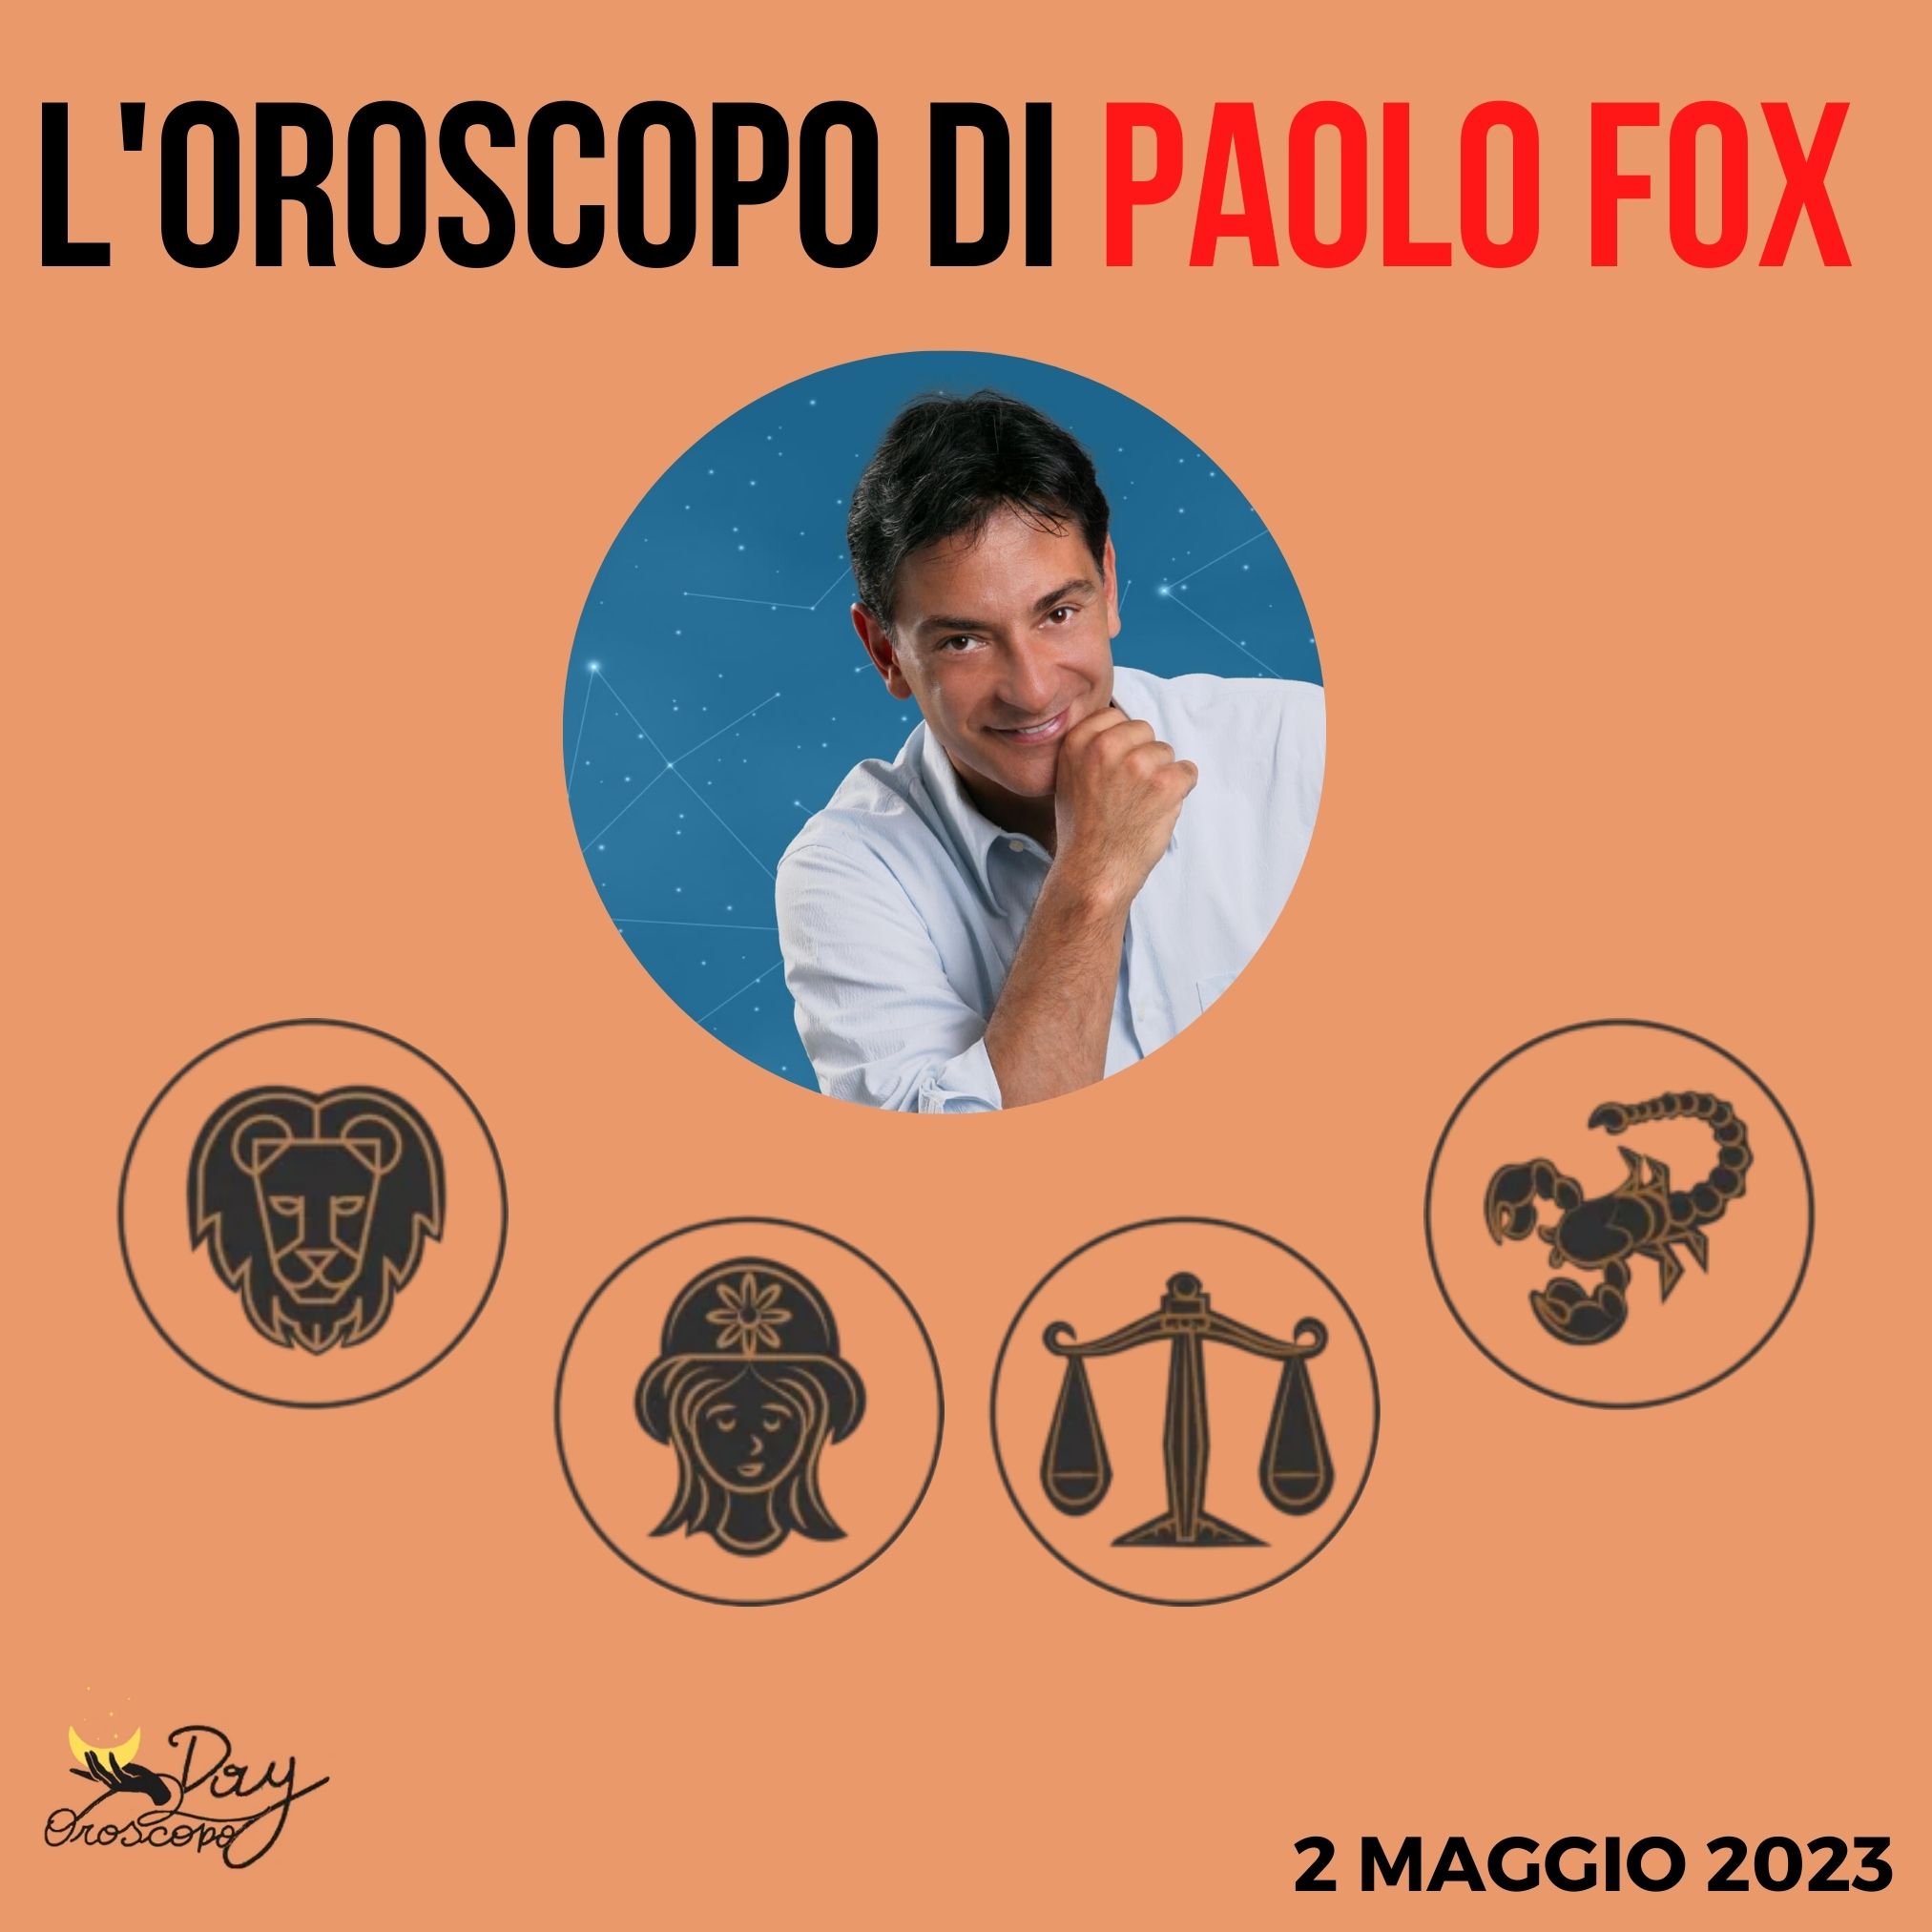 Oroscopo oggi domani Paolo Fox 2 maggio Leone Vergine Bilancia Scorpione